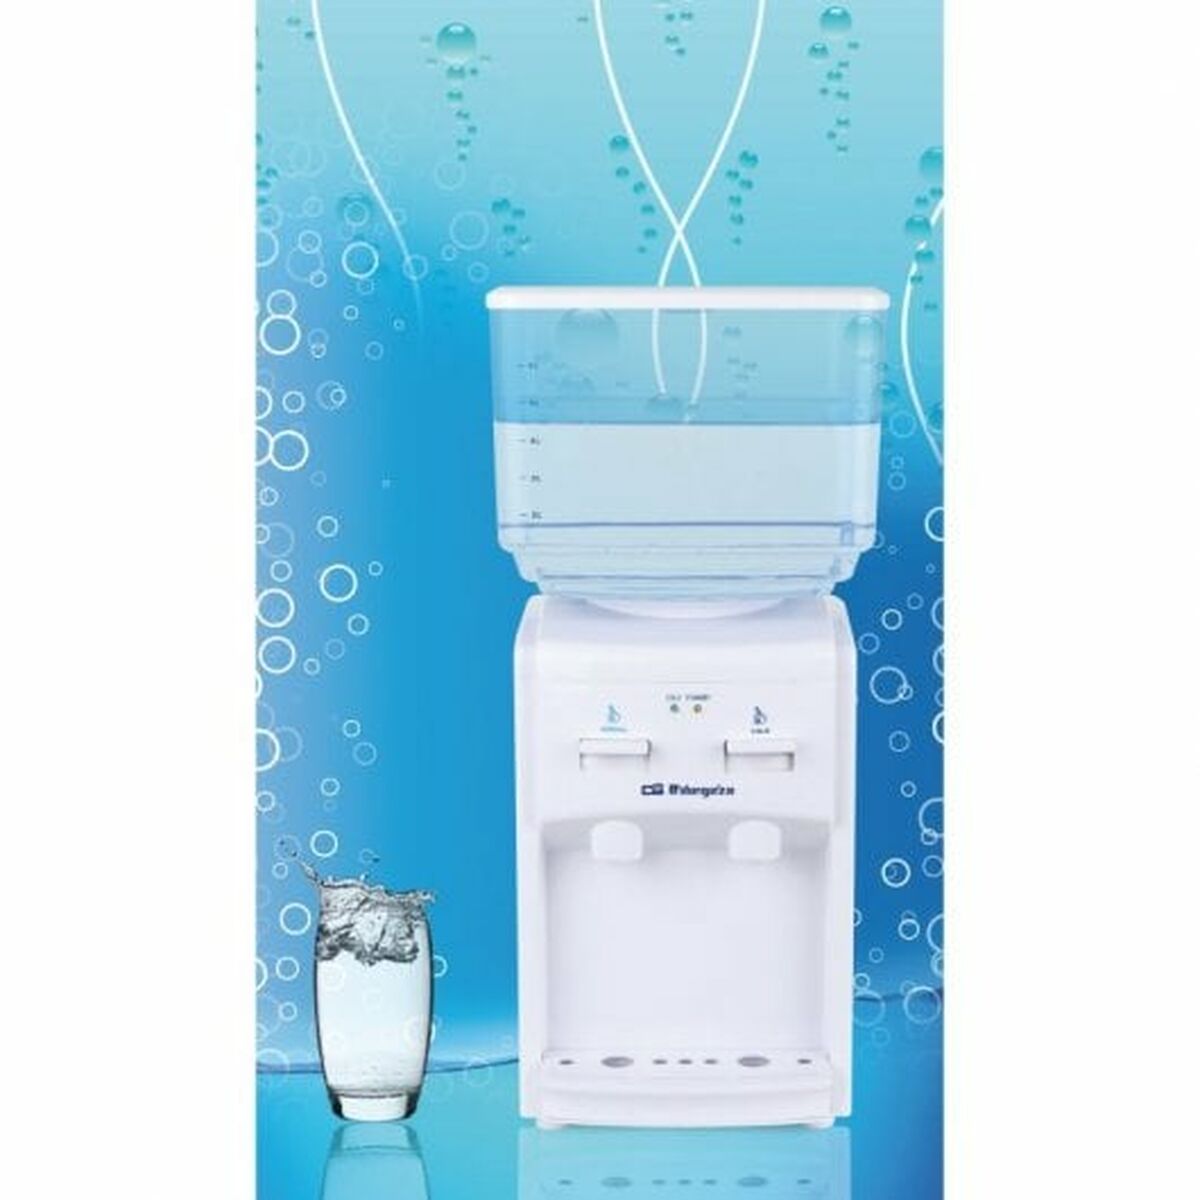 Kaufe Wasserspender Orbegozo DA 5525 Weiß Kunststoff 7 L bei AWK Flagship um € 92.00